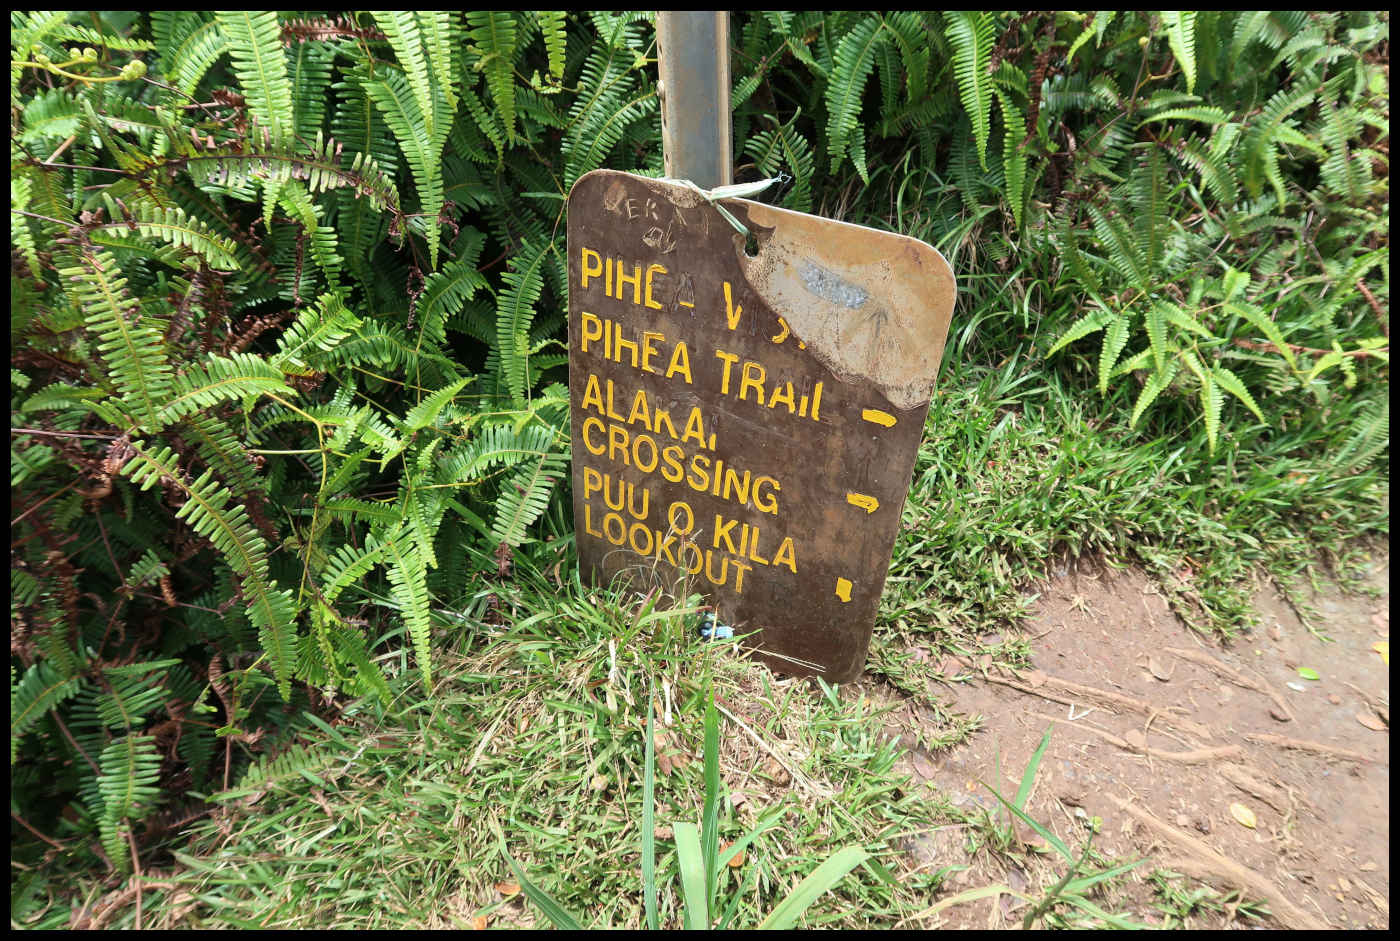 Información - Pihea Trail